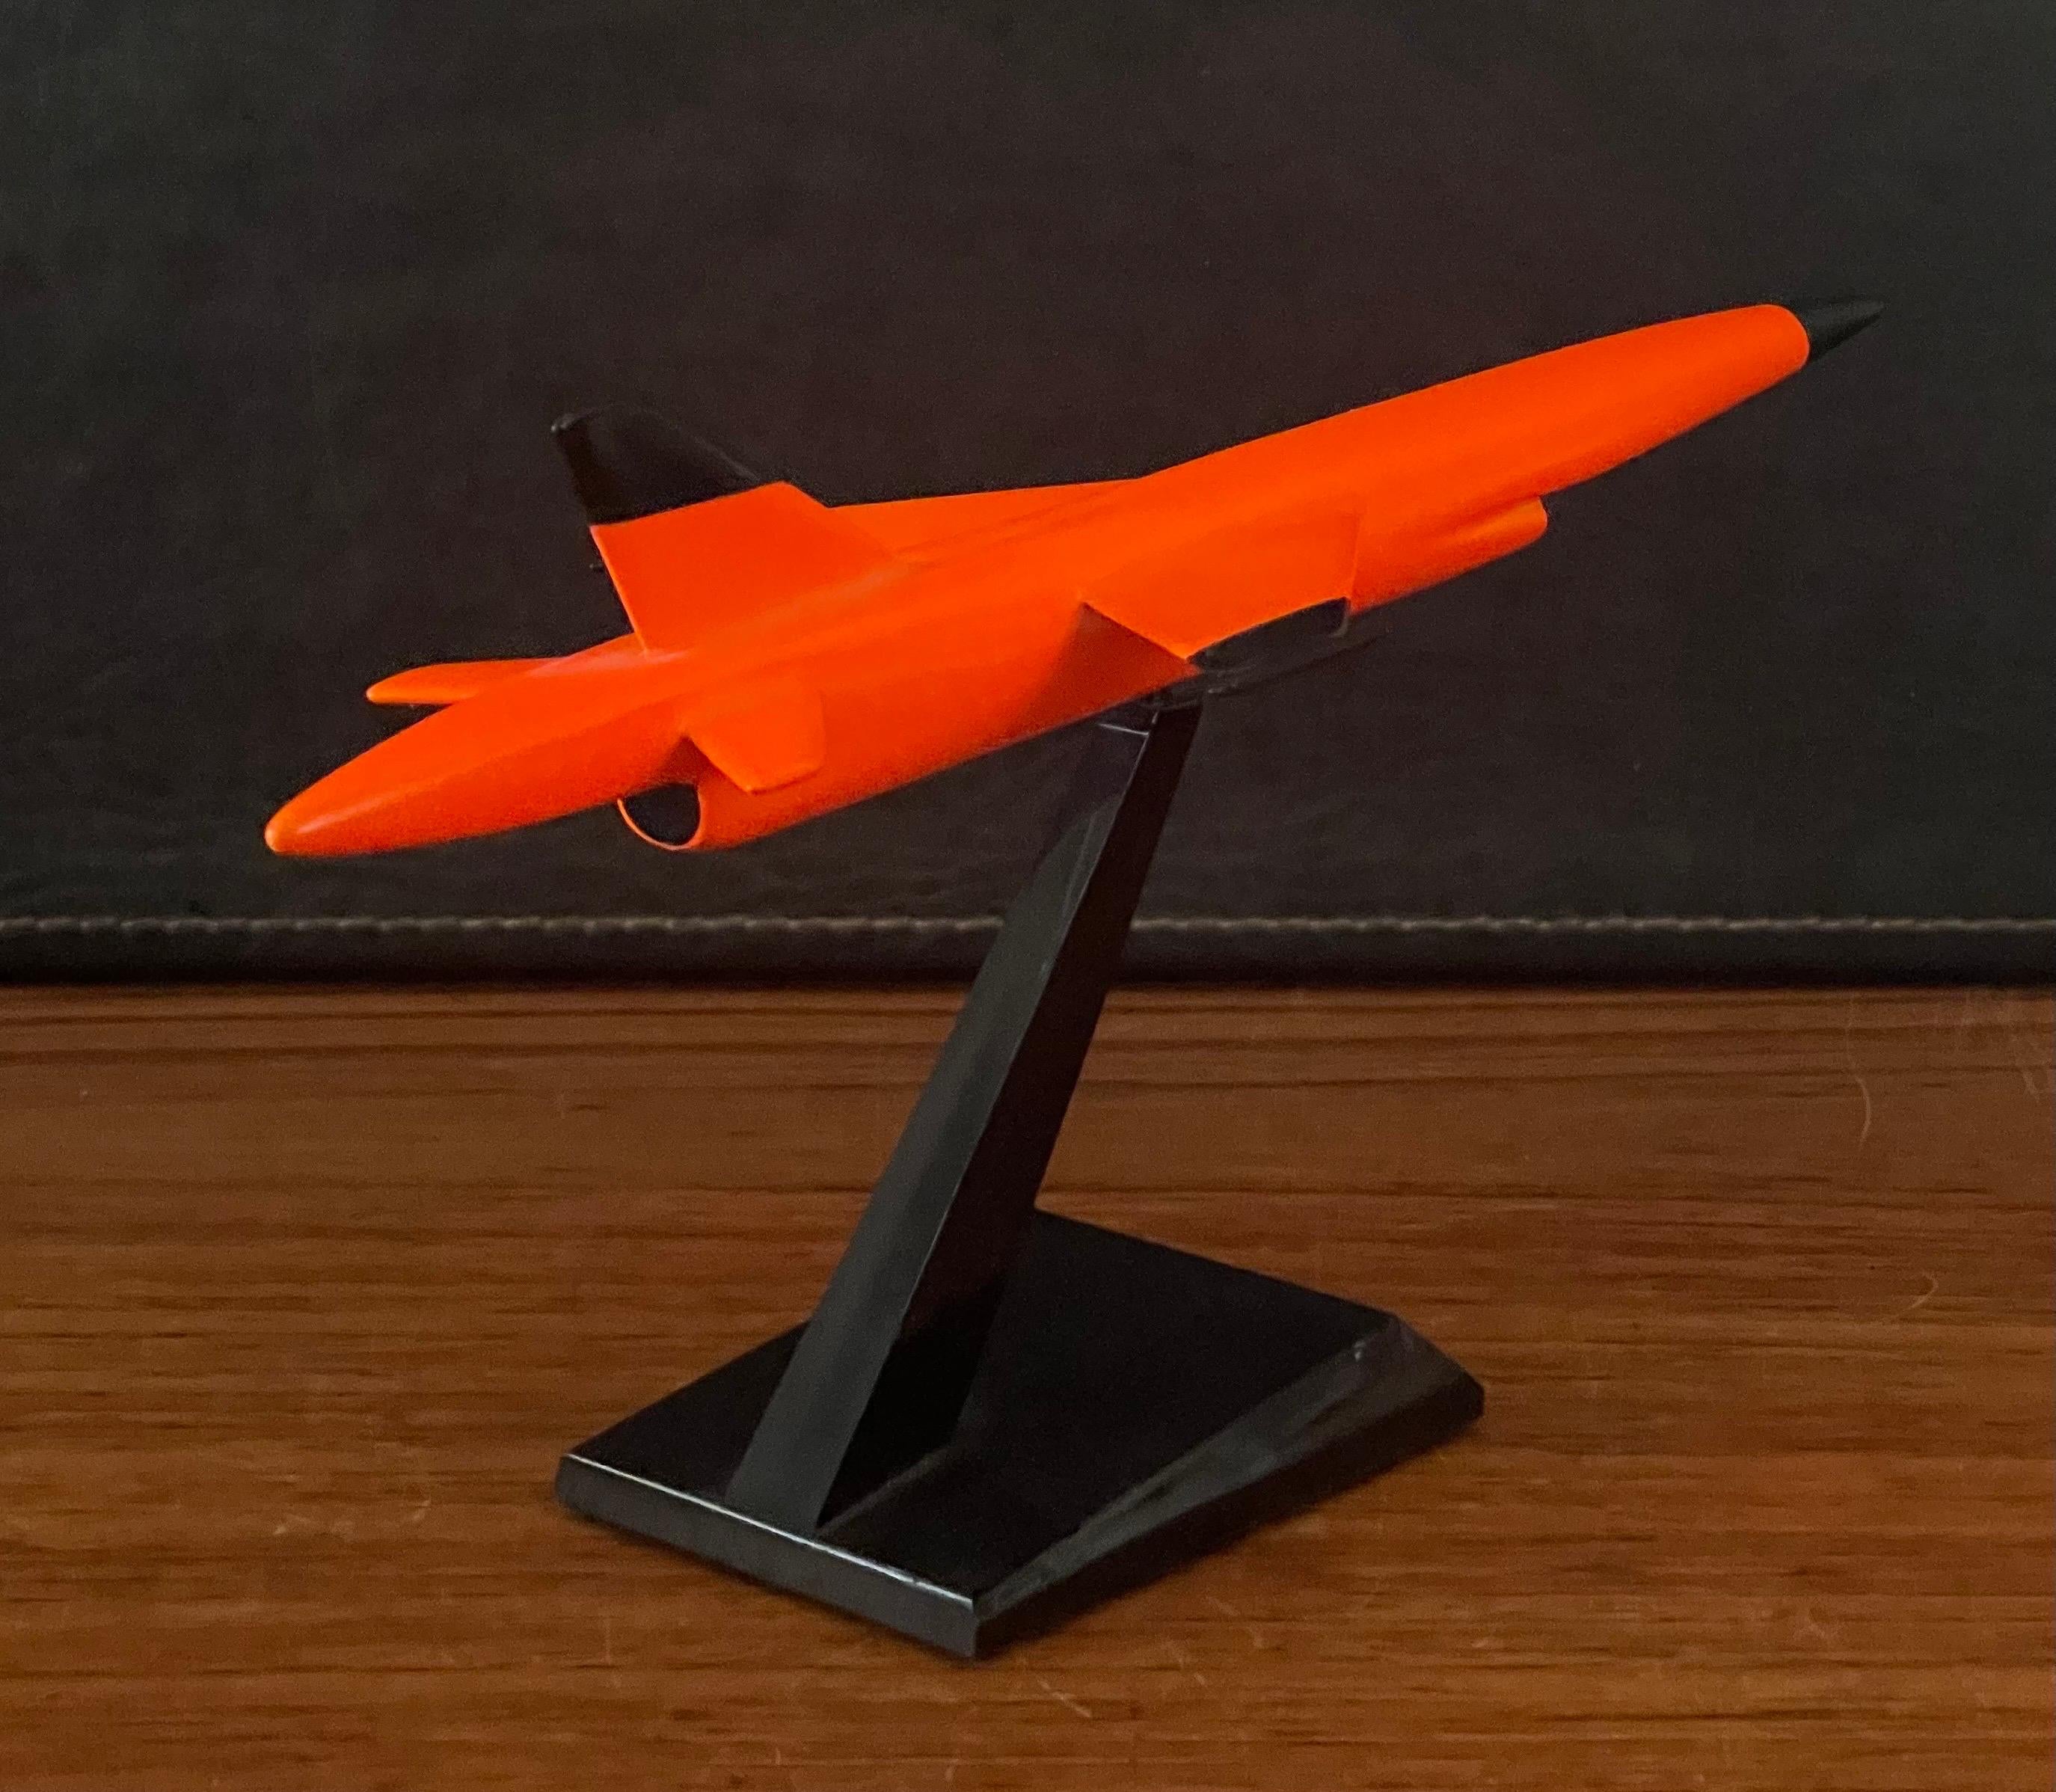 American Teledyne Ryan Firebee II Drone Contractor's Desk Model For Sale